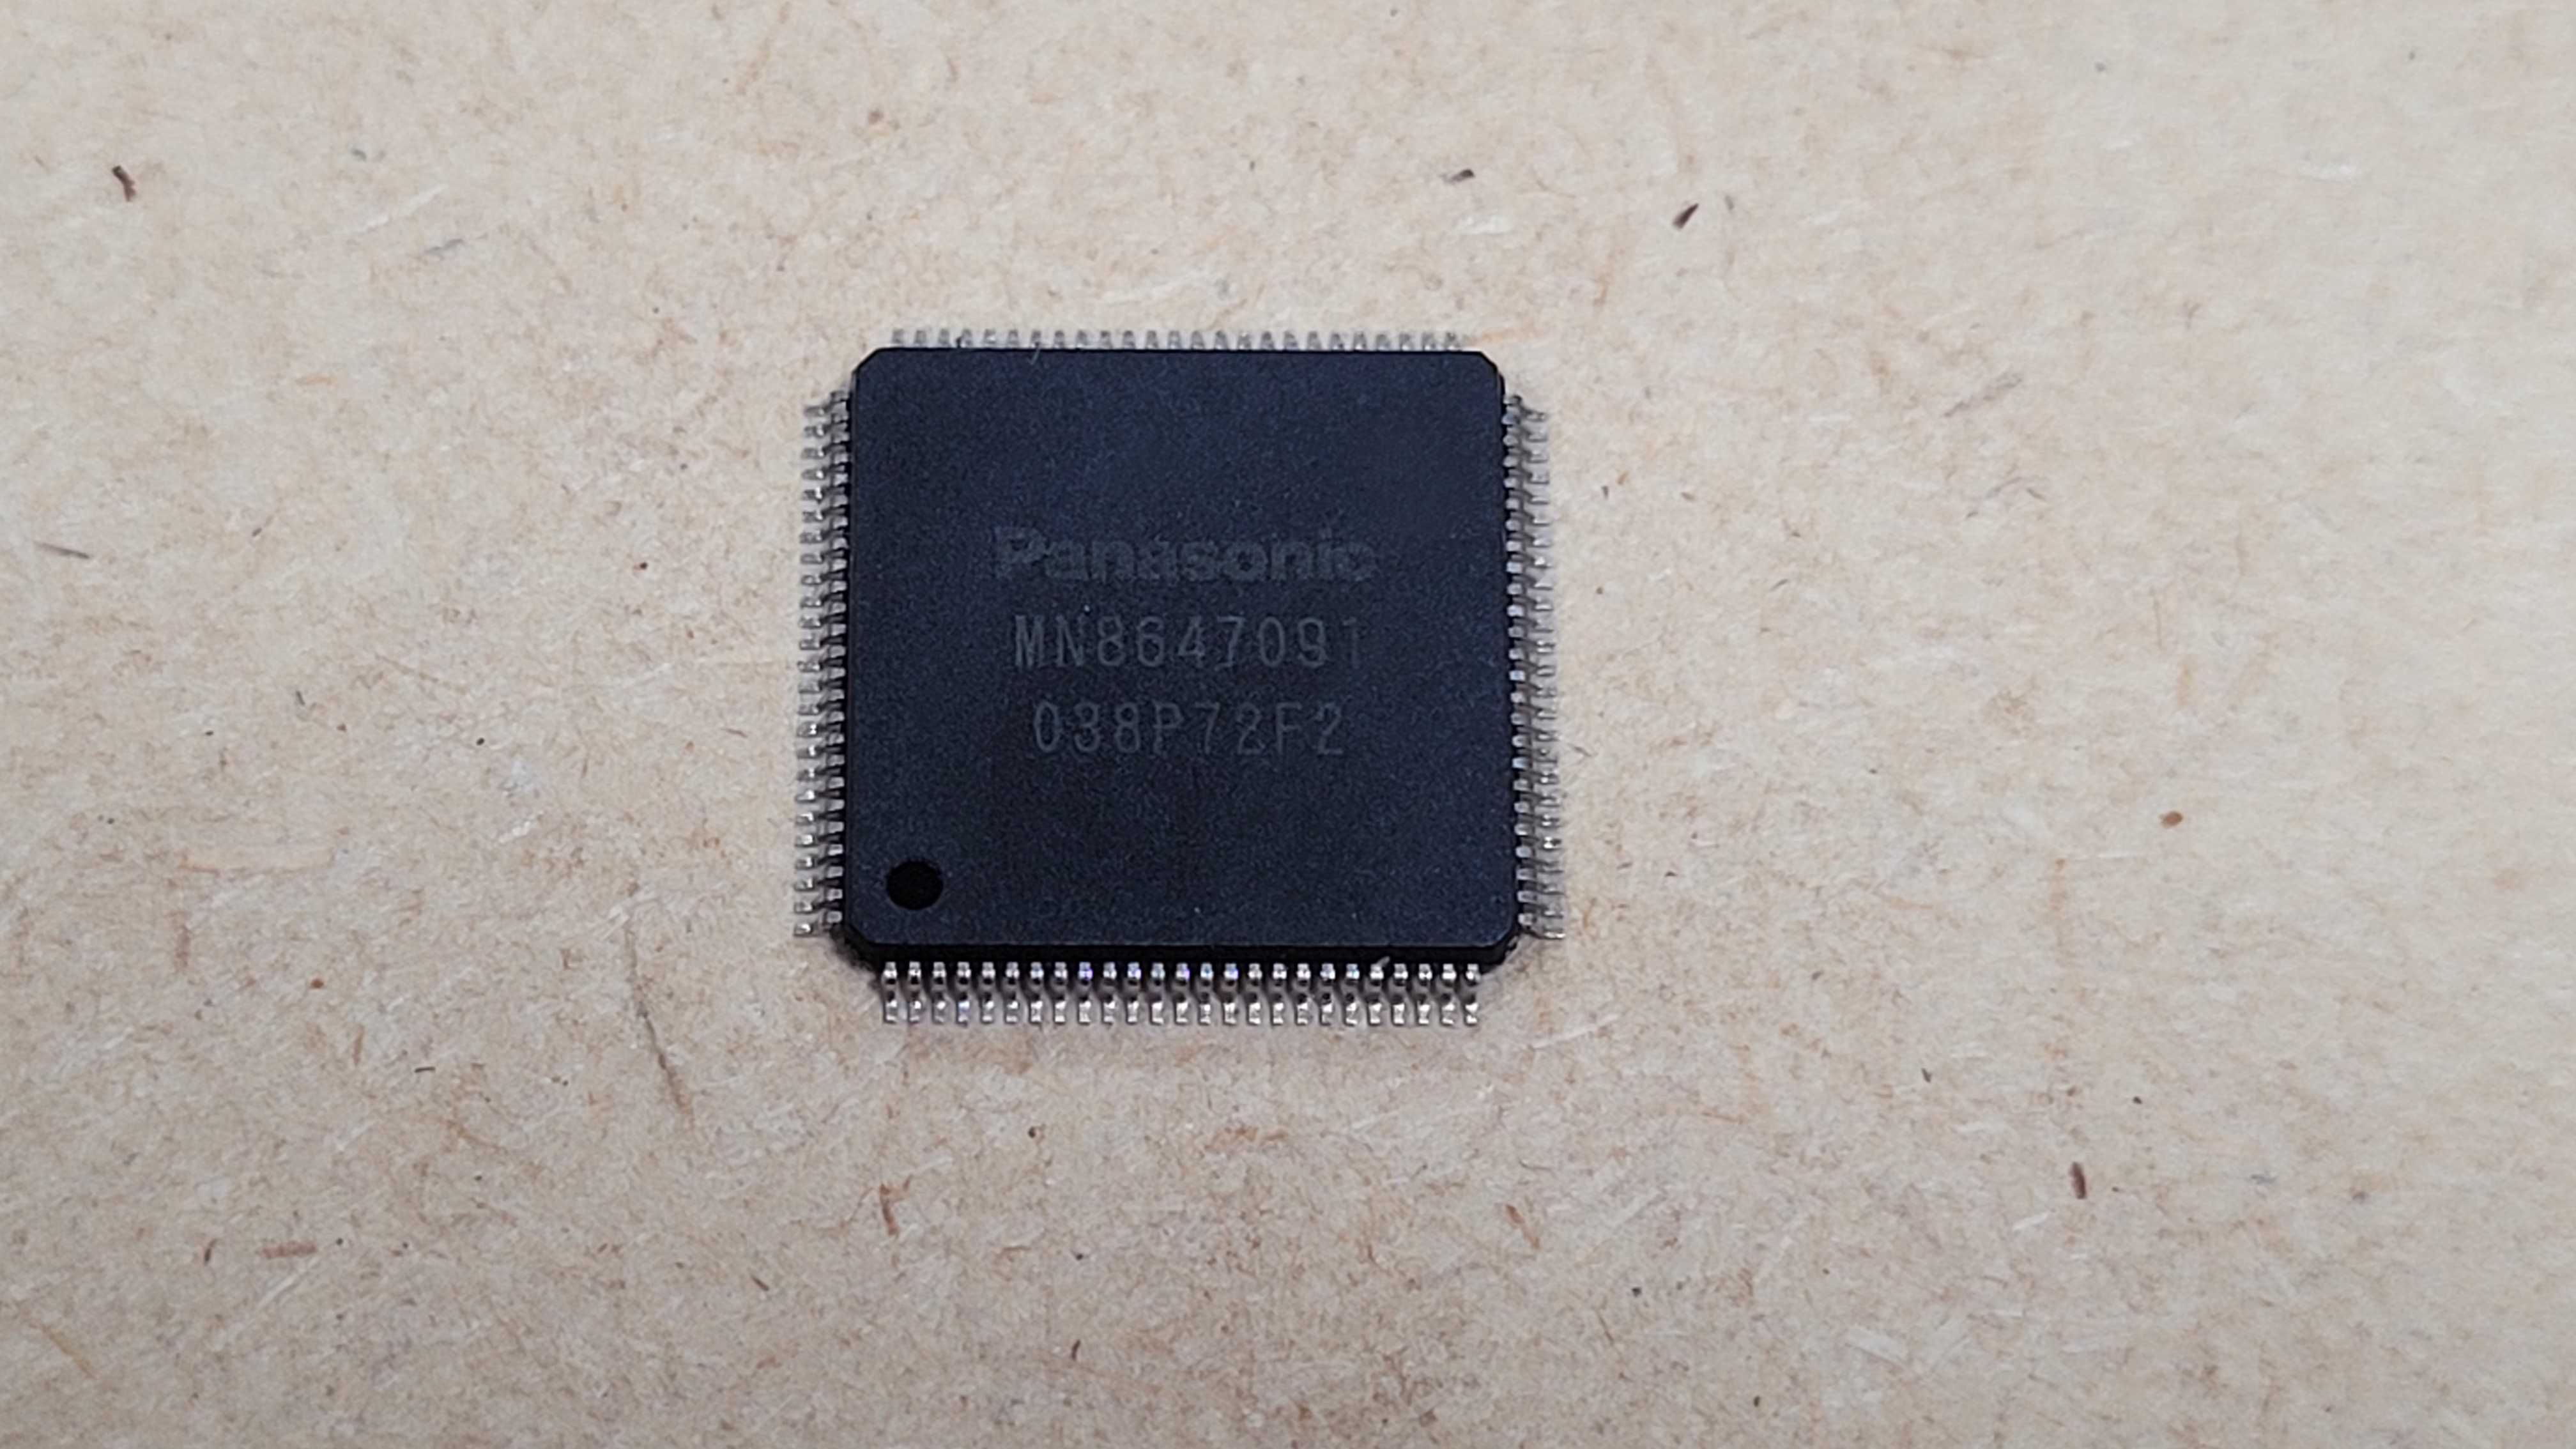 MN8647091 Panasonic Hdmi Playstation 3 slim fat PS3 #2